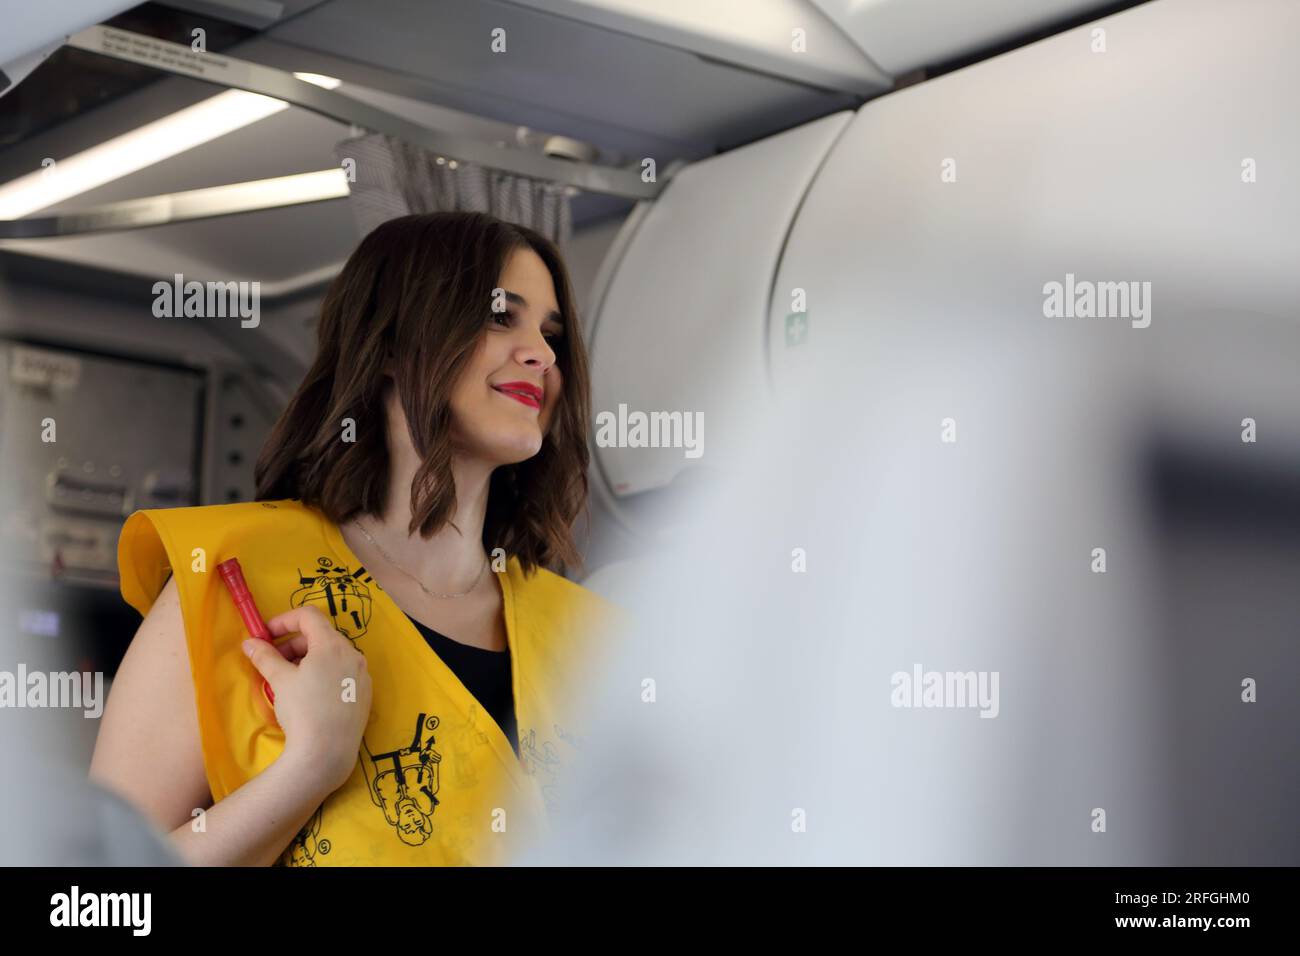 Heathrow London Airport England agent de bord démontrant les procédures de sécurité portant un gilet de sauvetage gonflable avant le vol Banque D'Images